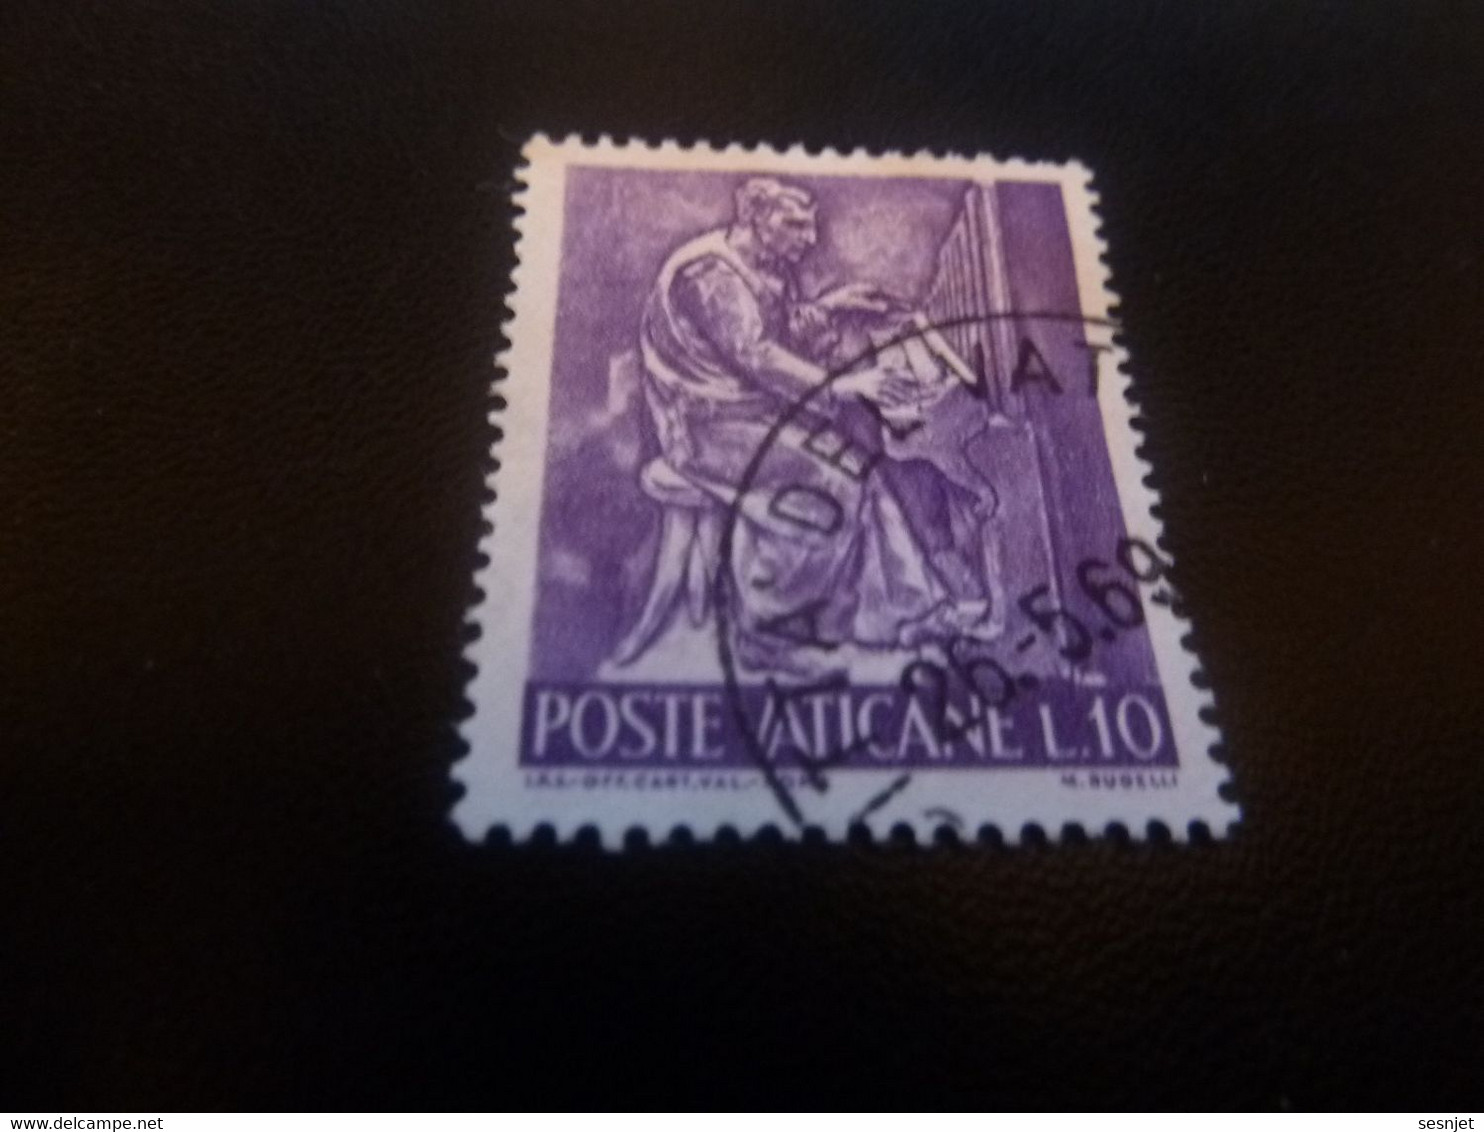 Poste Vaticane - J.P.S Off Cart Val Roma - M. Rudelli - Val L.10 - Lilas Foncé - Oblitéré - Année 1969 - - Usados